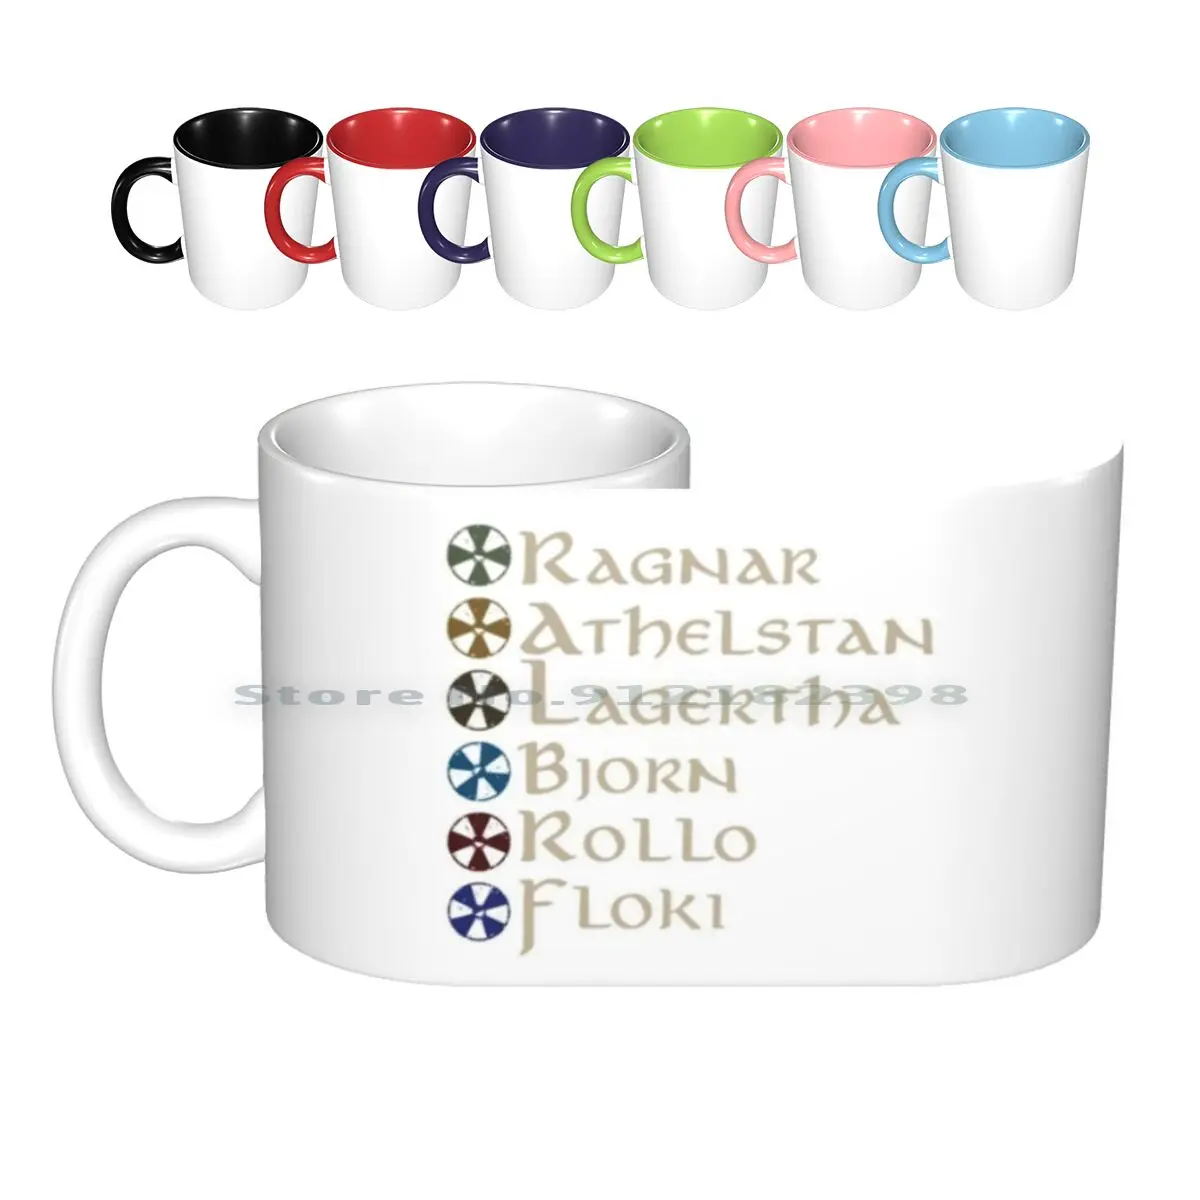 

Чай м Викинги Керамические Кружки Кофейные чашки Кружка для чая с молоком канал истории викингов Рагнар чай м Ragnar Lothbrok Rollo